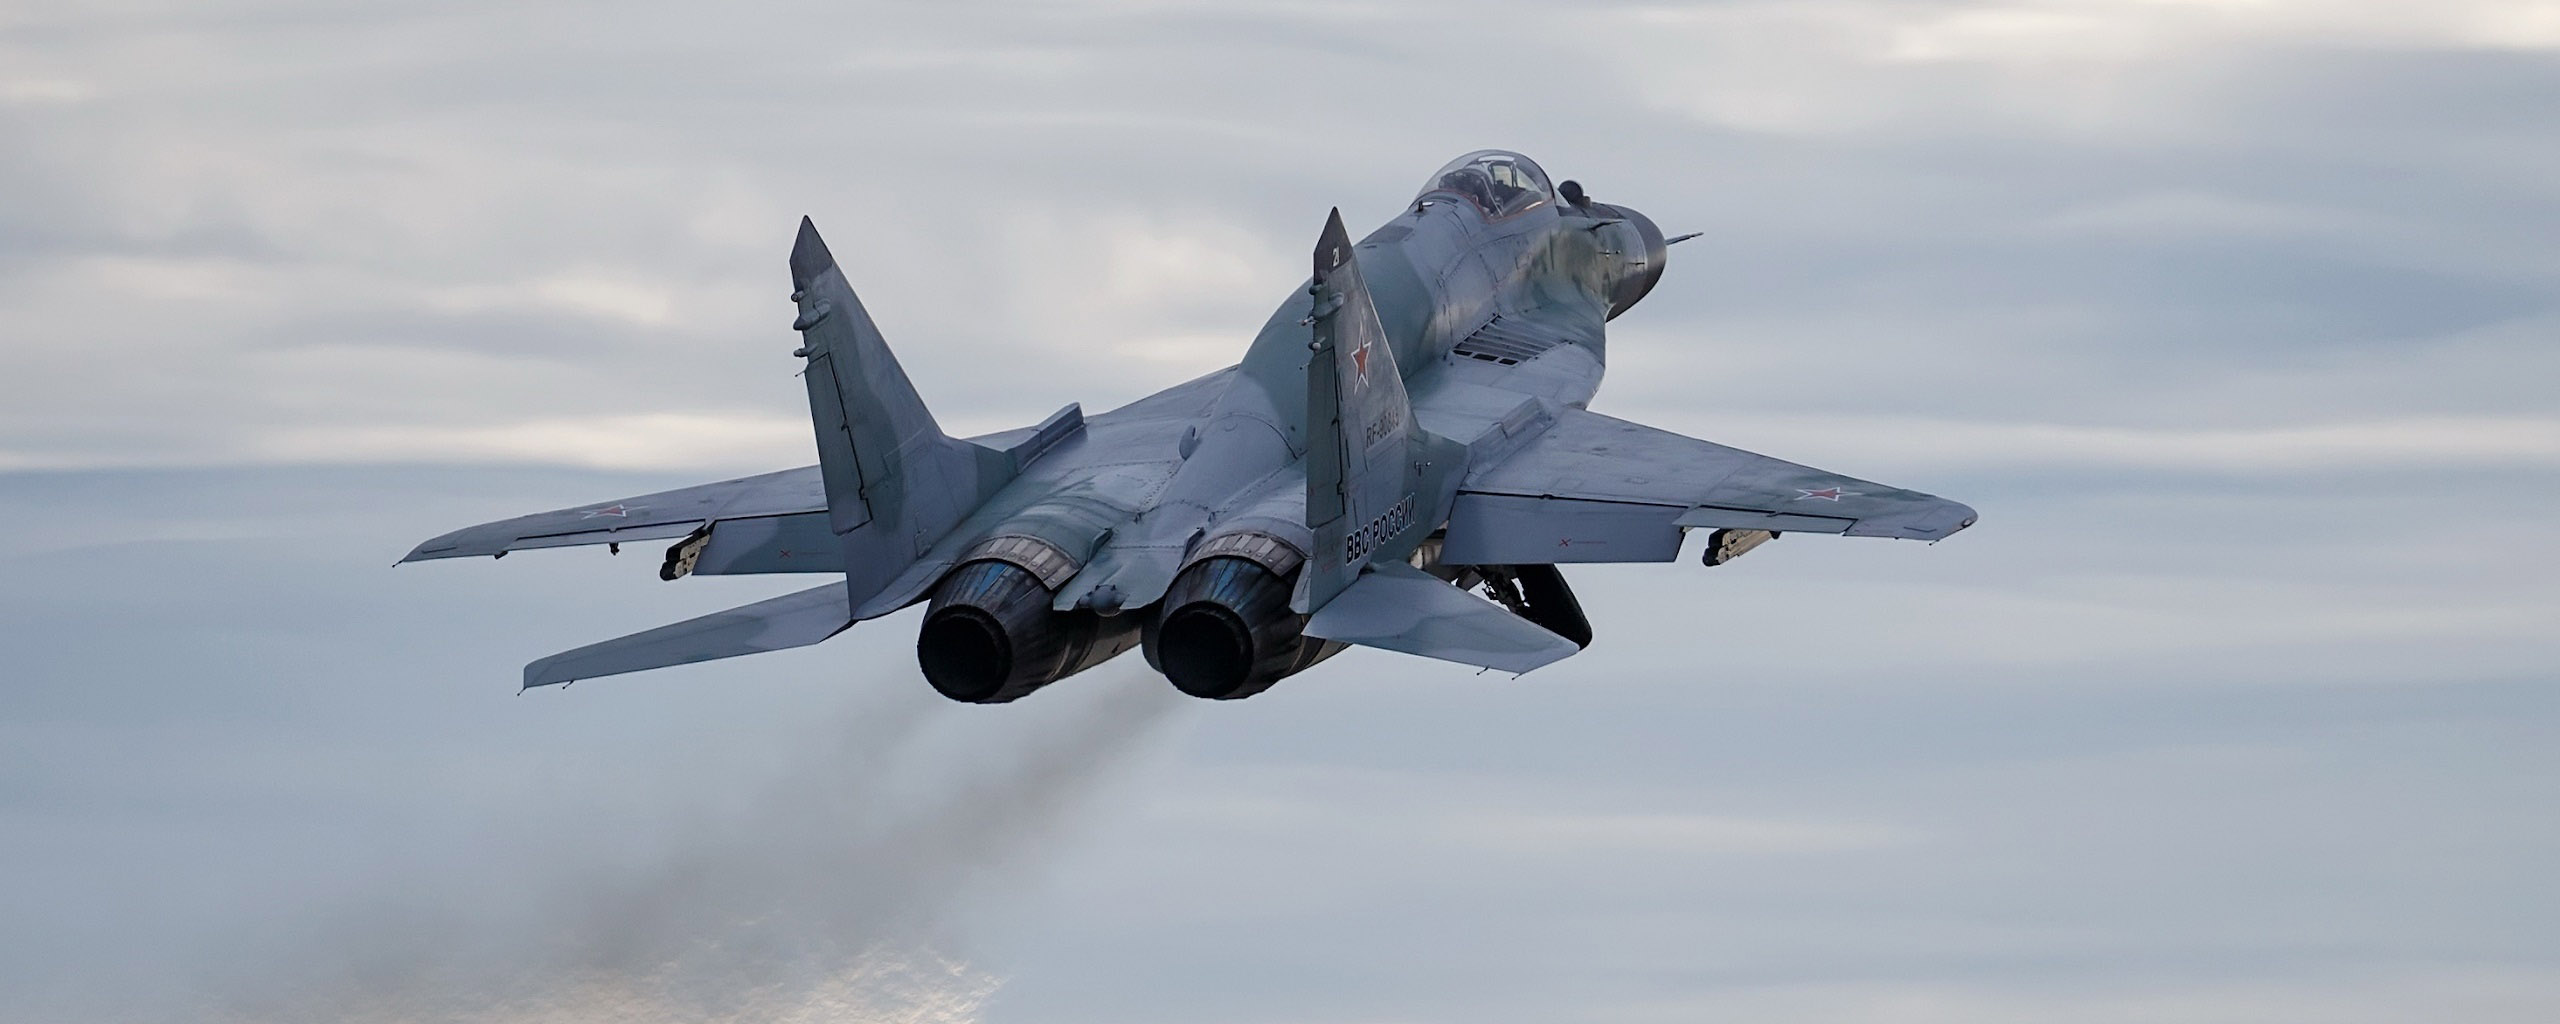 Минобороны Венгрии намерено продать все имеющиеся истребители МиГ-29